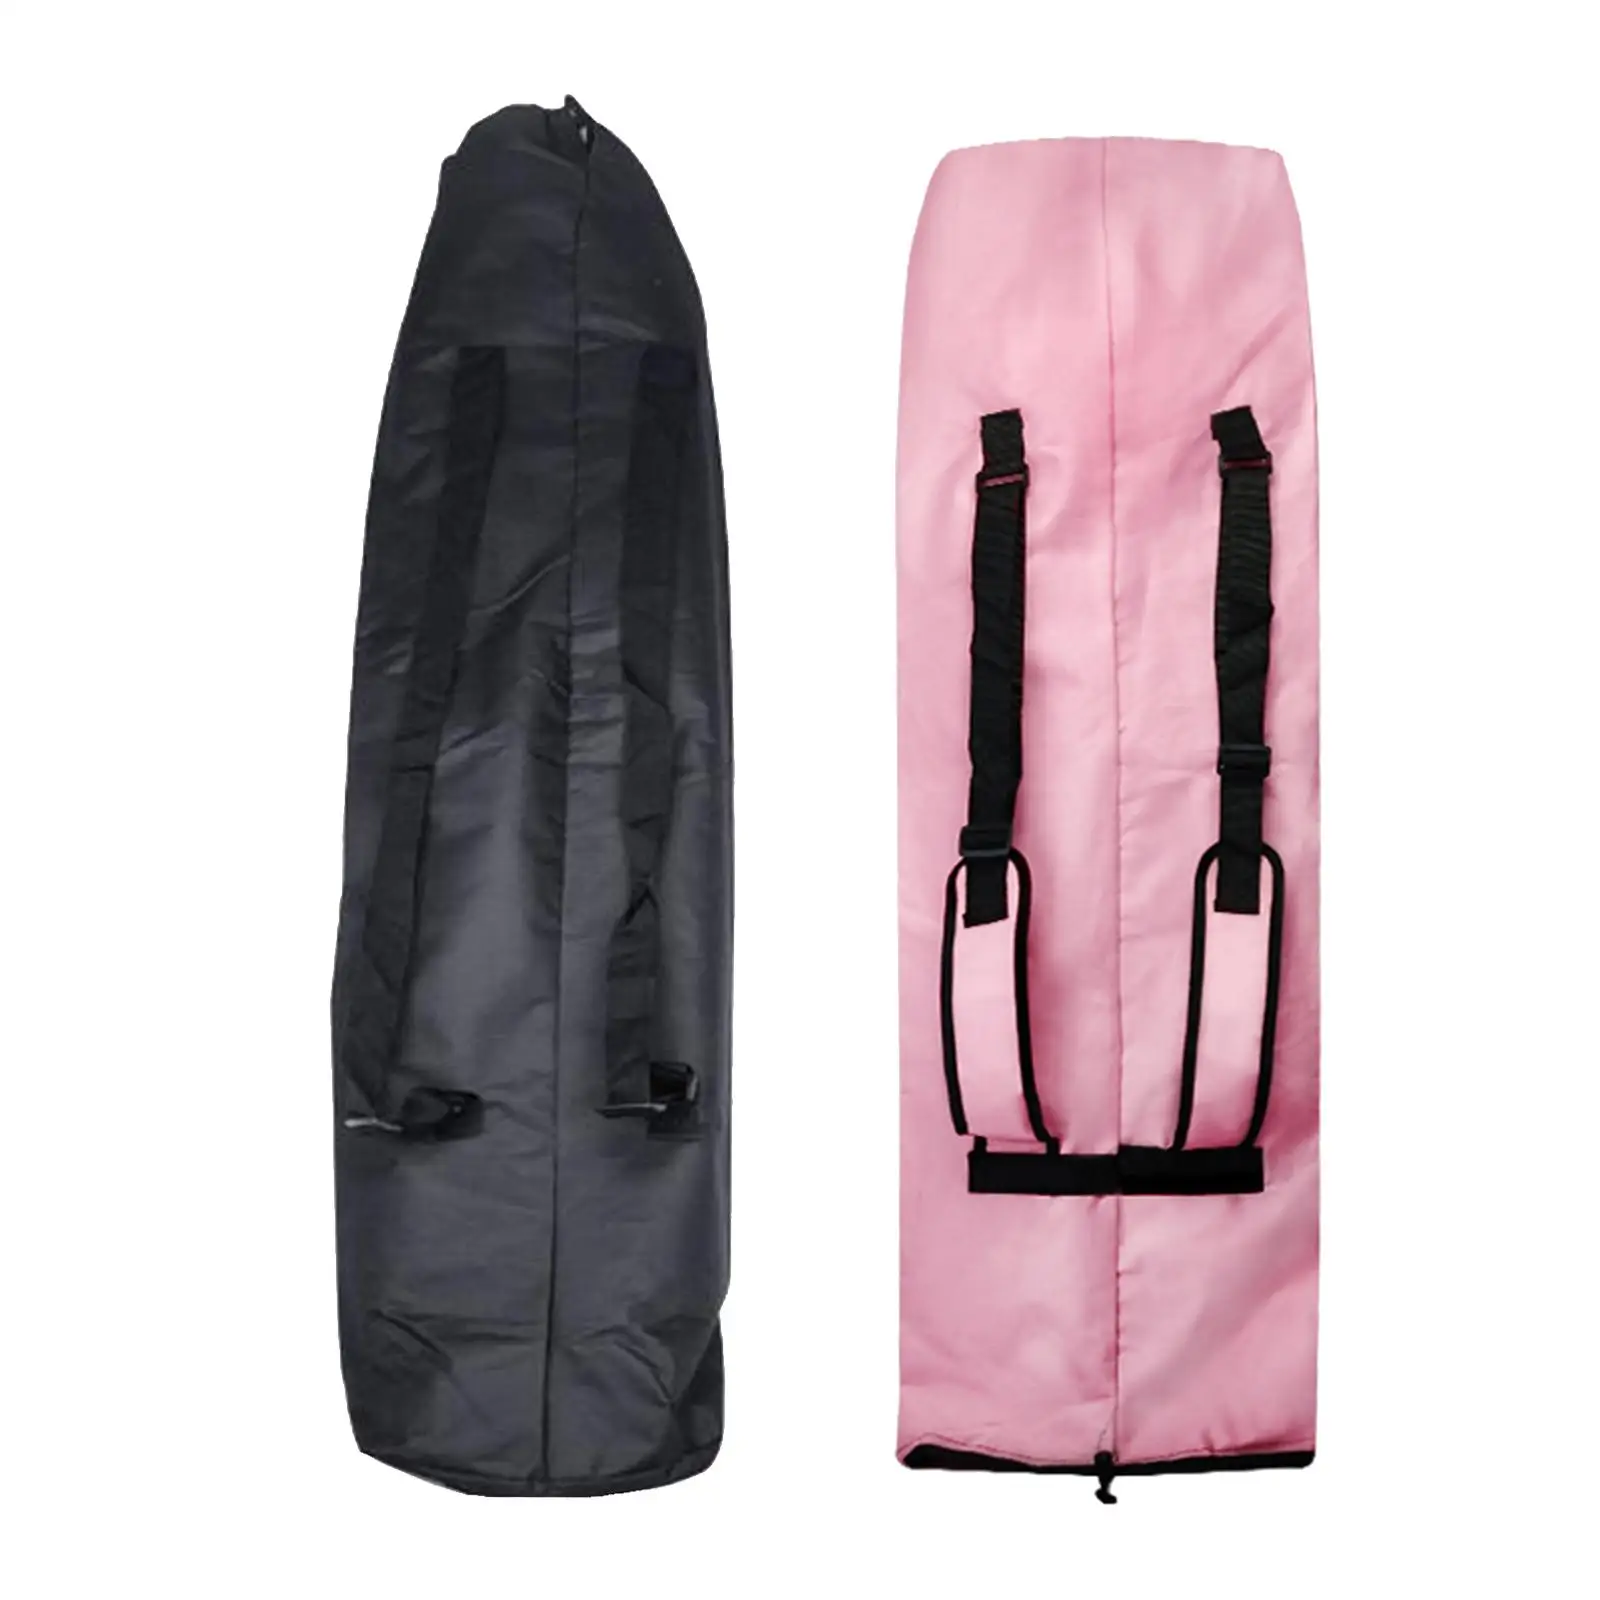 Skateboard Backpack Bag with Adjustable 2 Shoulder Straps, Foldable Waterproof